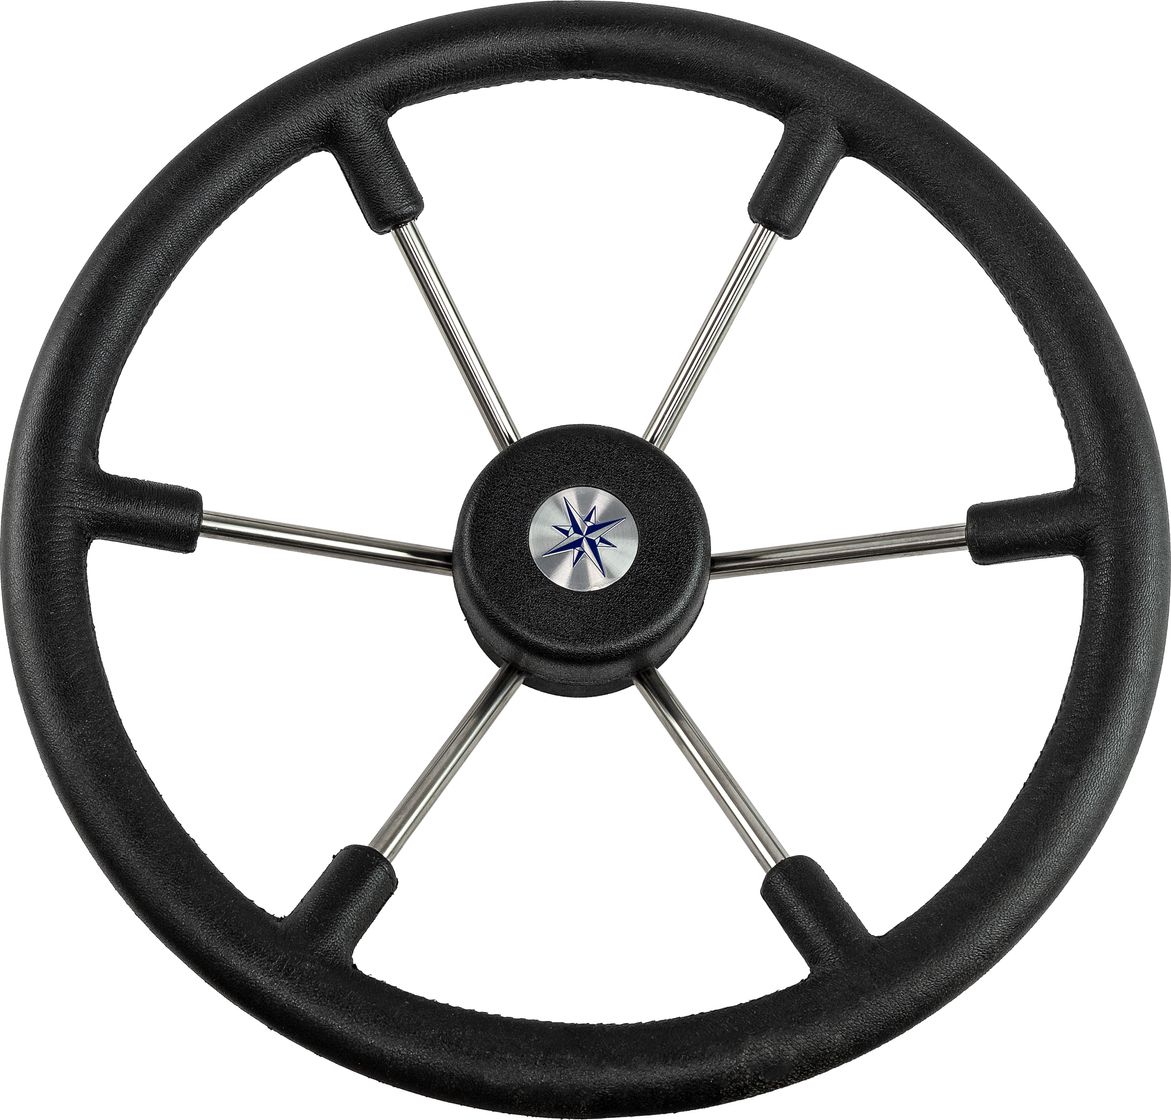 Рулевое колесо LEADER TANEGUM черный обод серебряные спицы д. 400 мм VN7400-01 рулевое колесо leader plast обод серебряные спицы д 360 мм vn8360 01